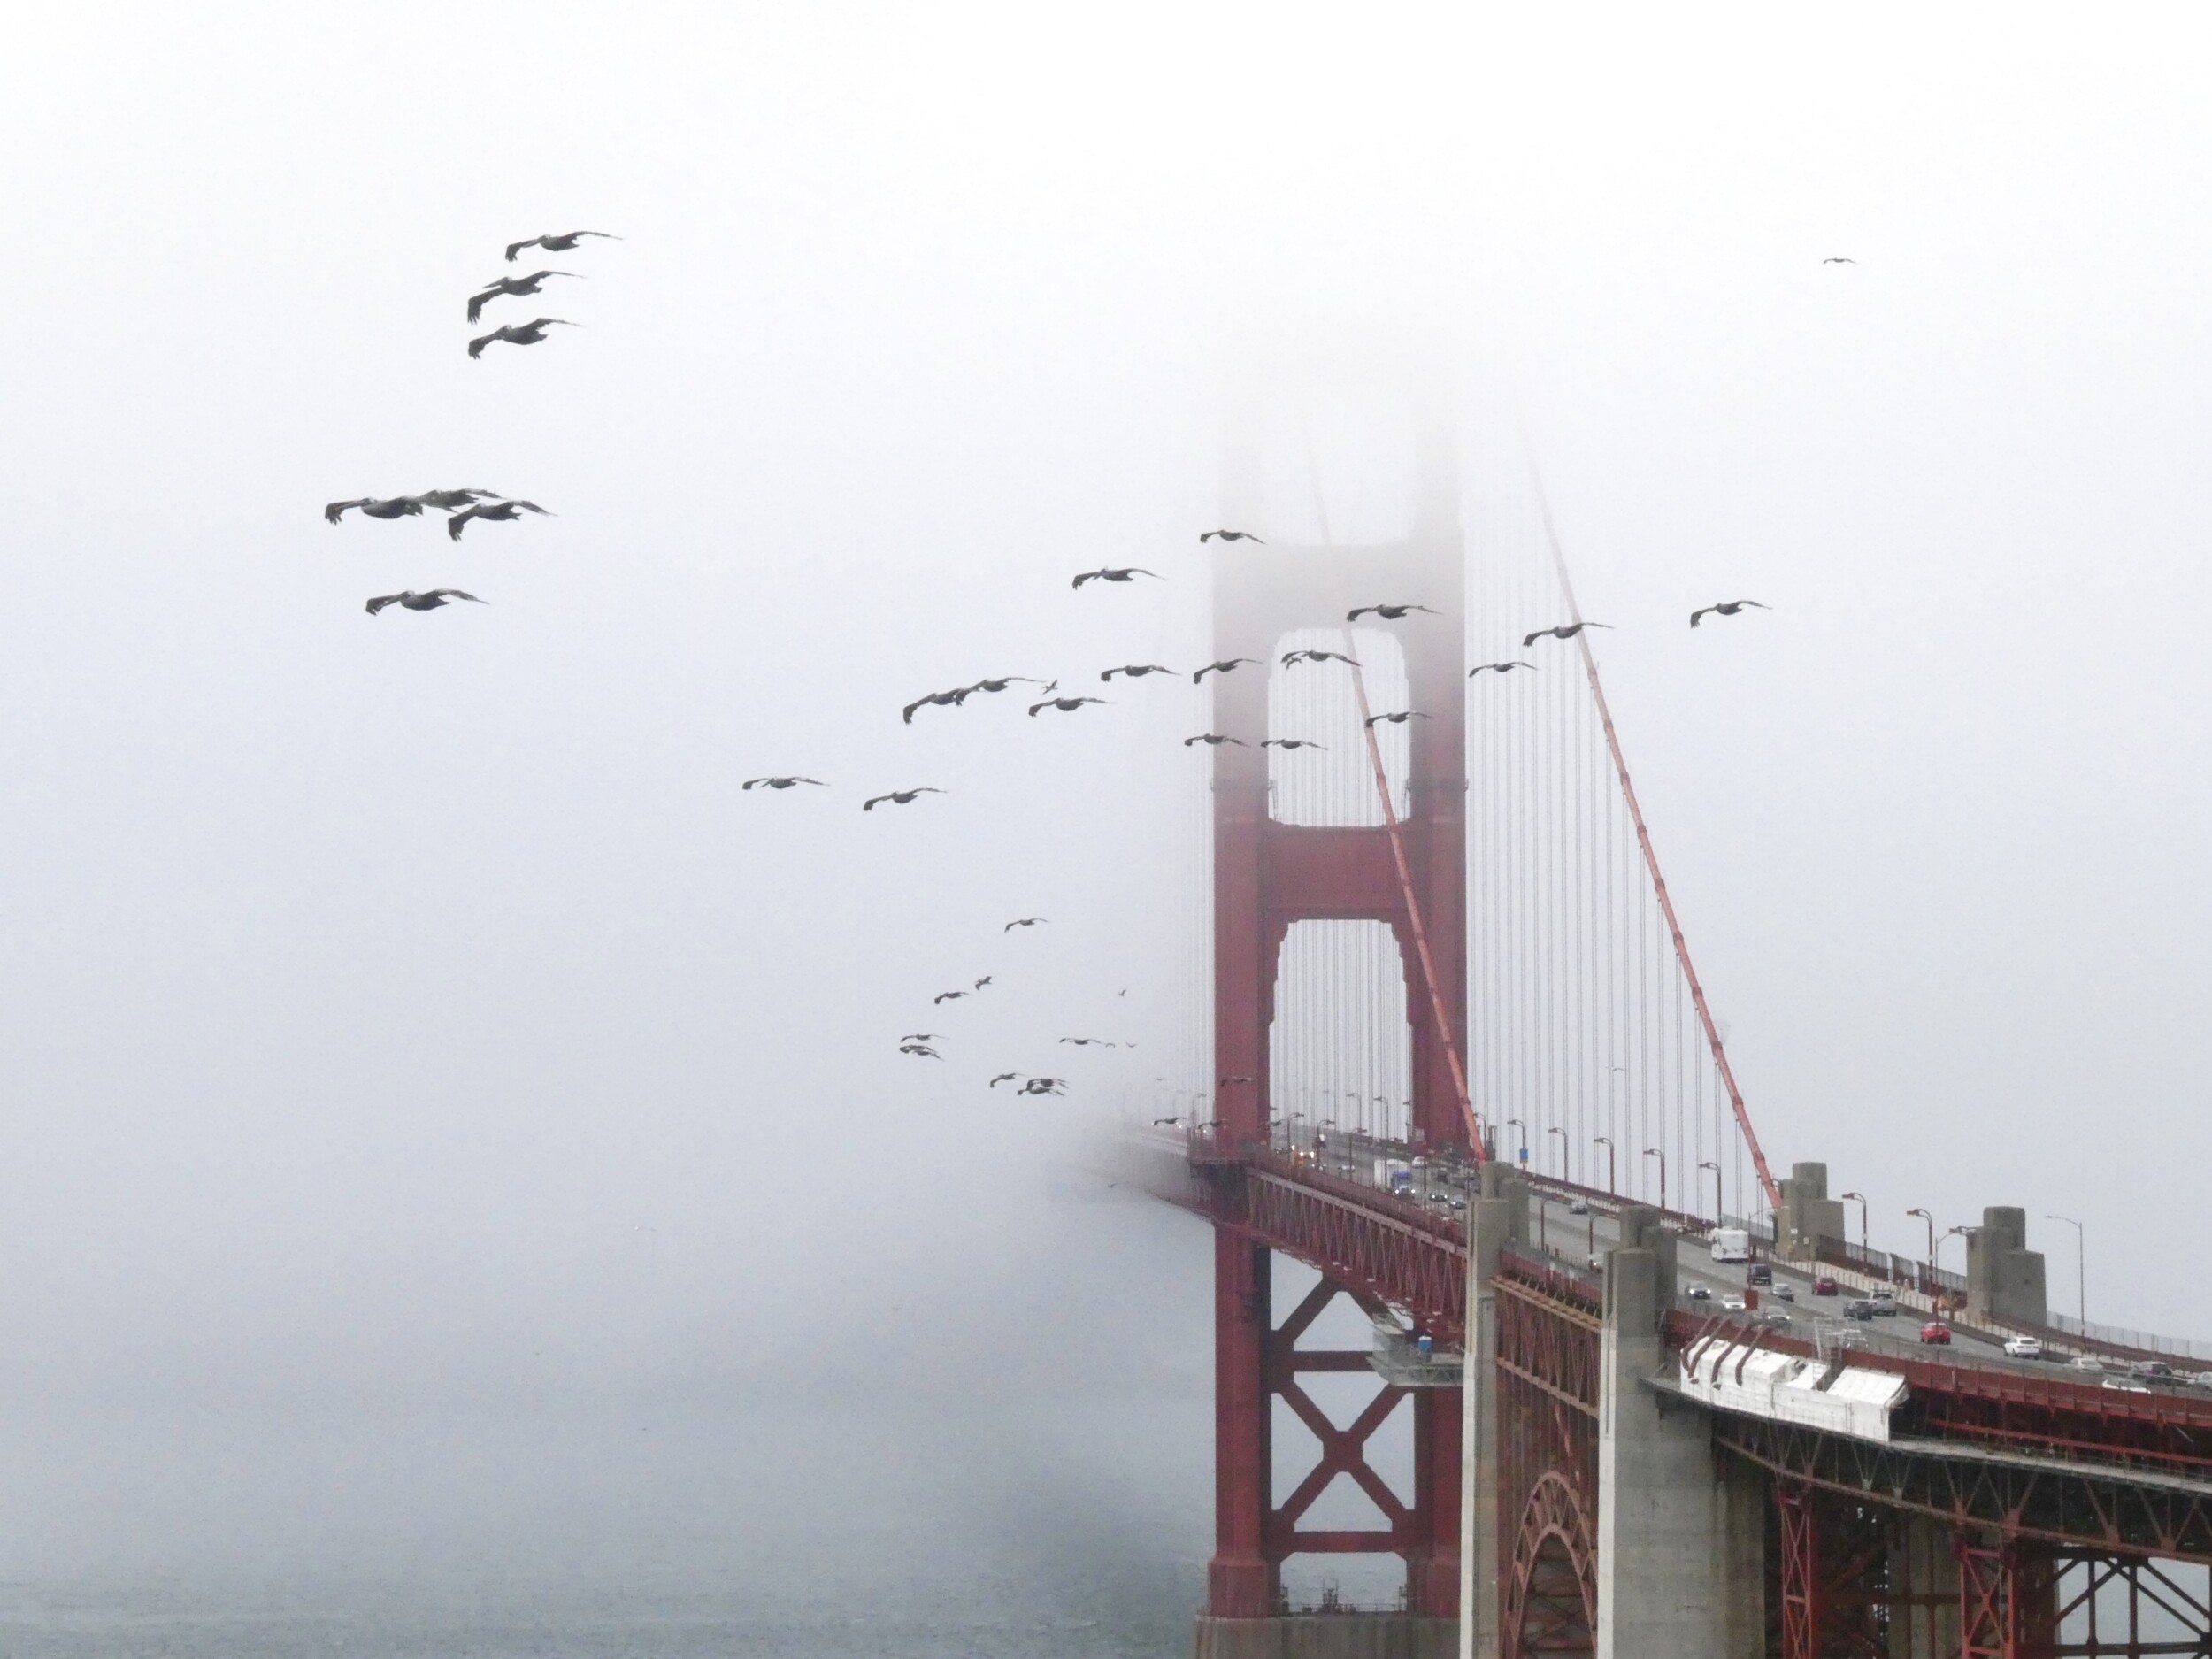 Golden Gate Bridge in Fog with Brown Pelicans